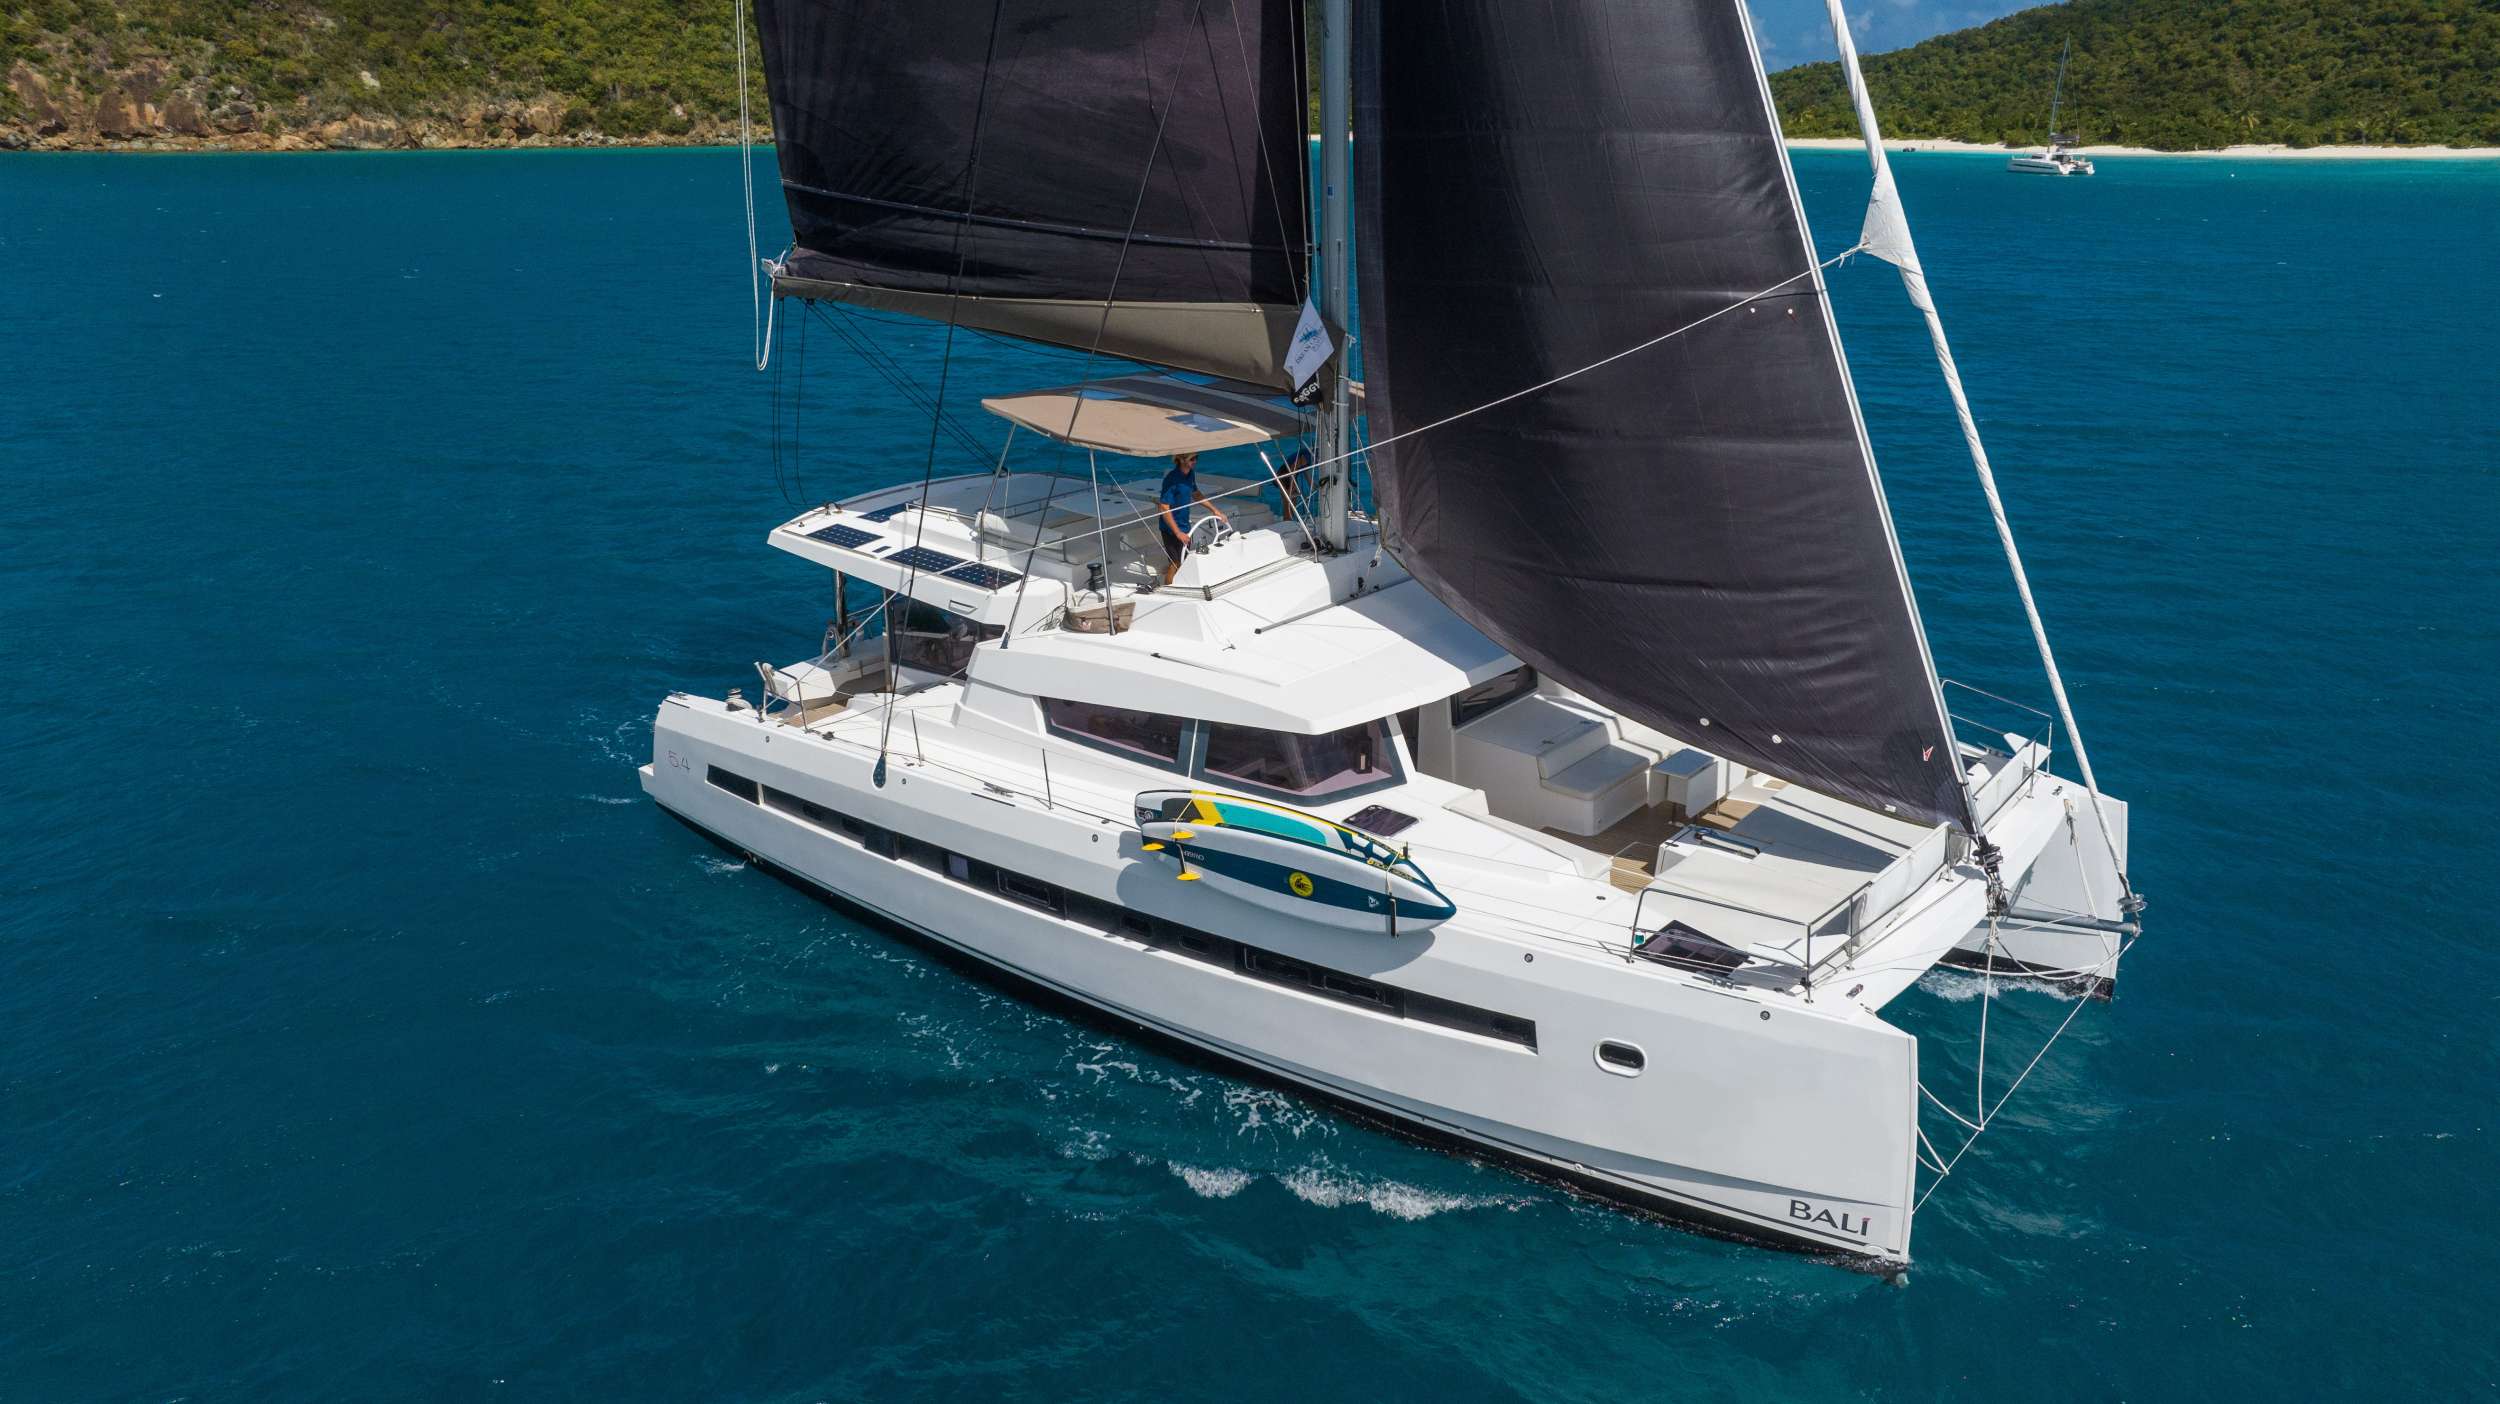 SUN DAZE 5.4 - Yacht Charter Antigua & Boat hire in Caribbean 1